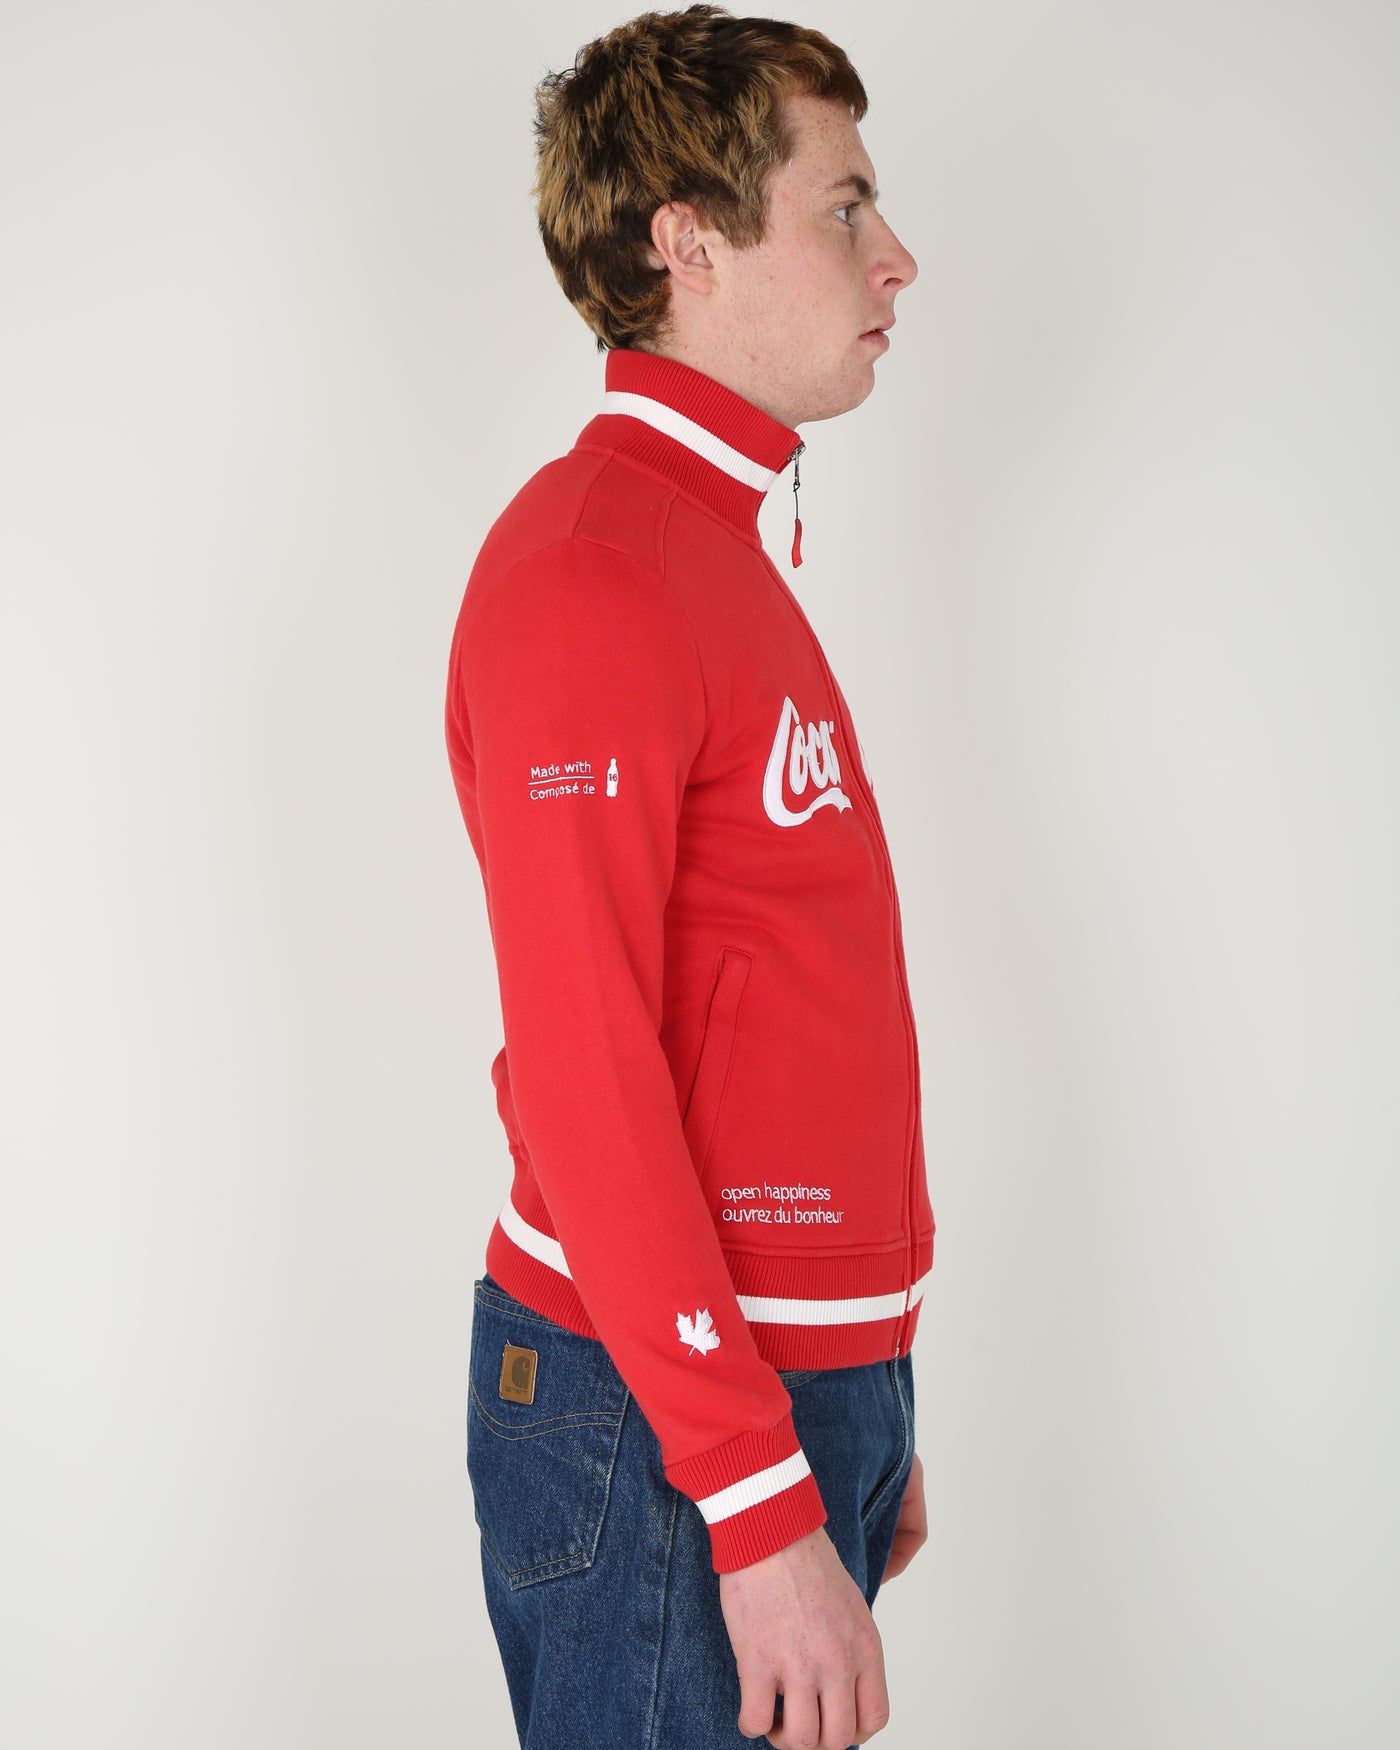 Olympics vancouver 2010 Coca cola red zip-up sweatshirt - xs